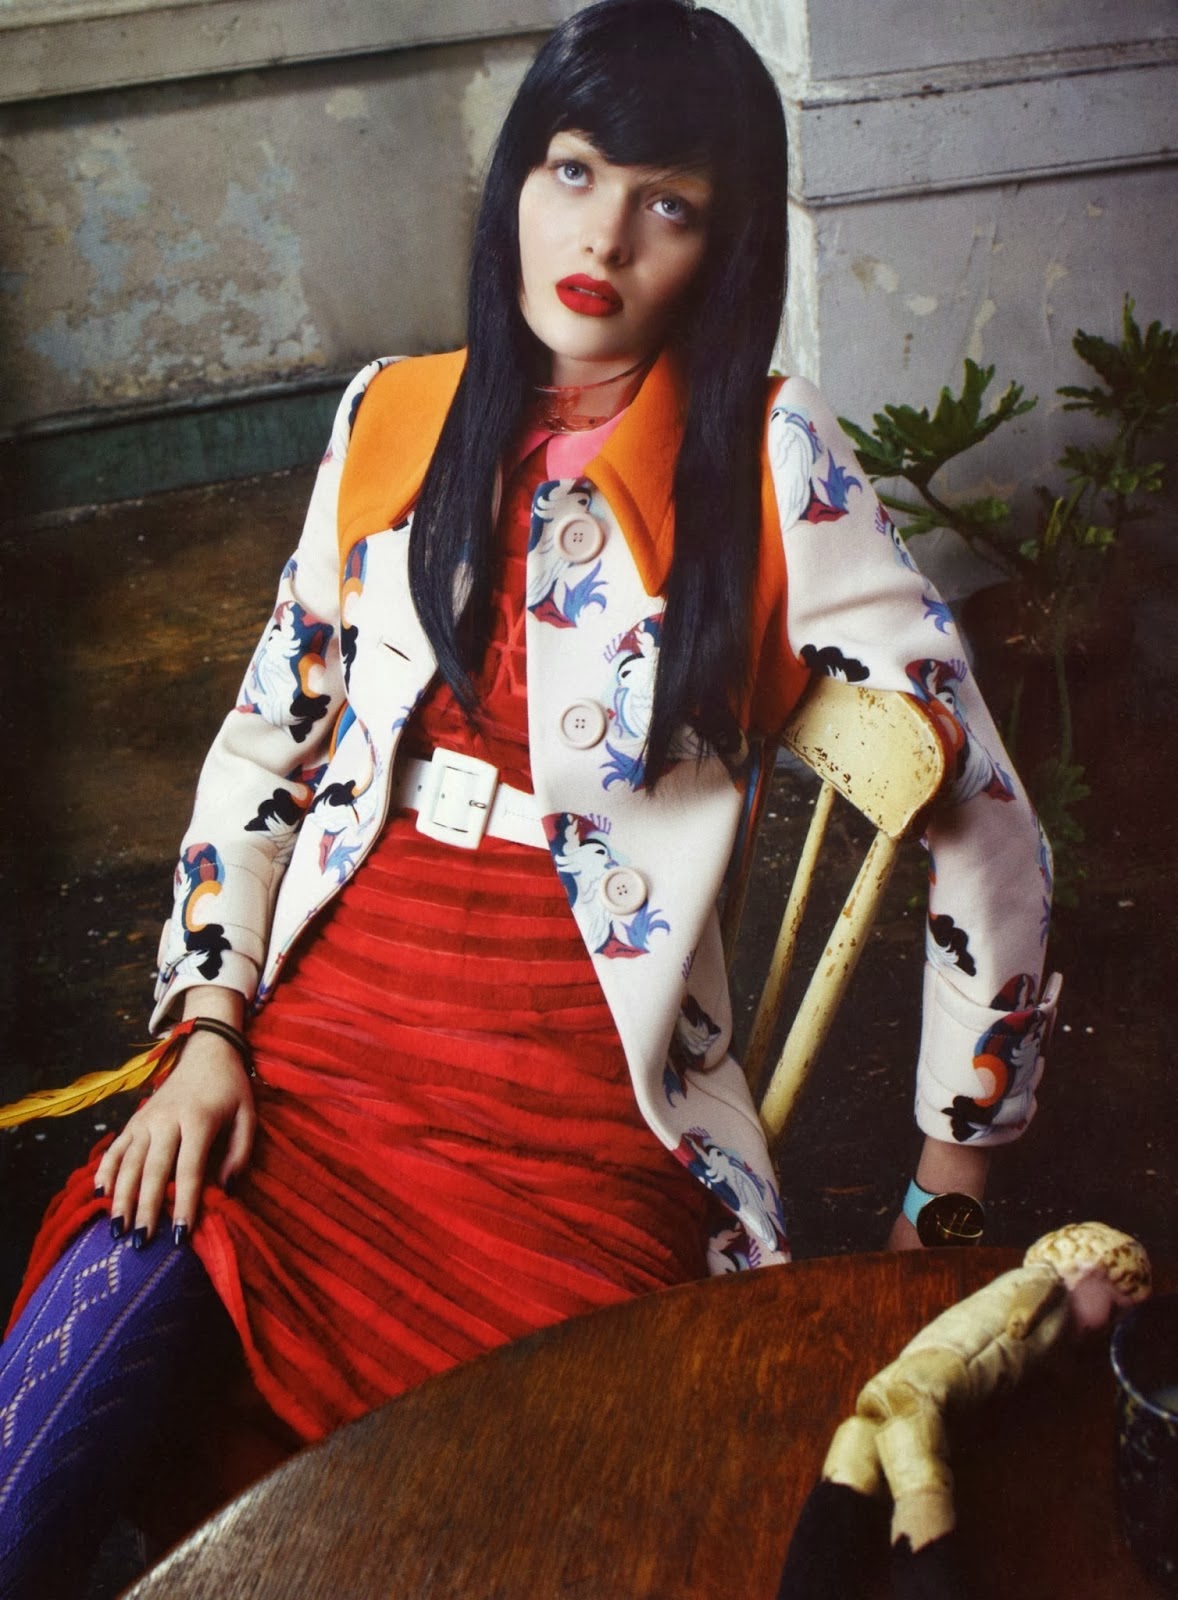 Magazine Photoshoot : Sam Rollinson Photoshot For Emma Summerton Vogue Magazine Italia January 2014 Issue 